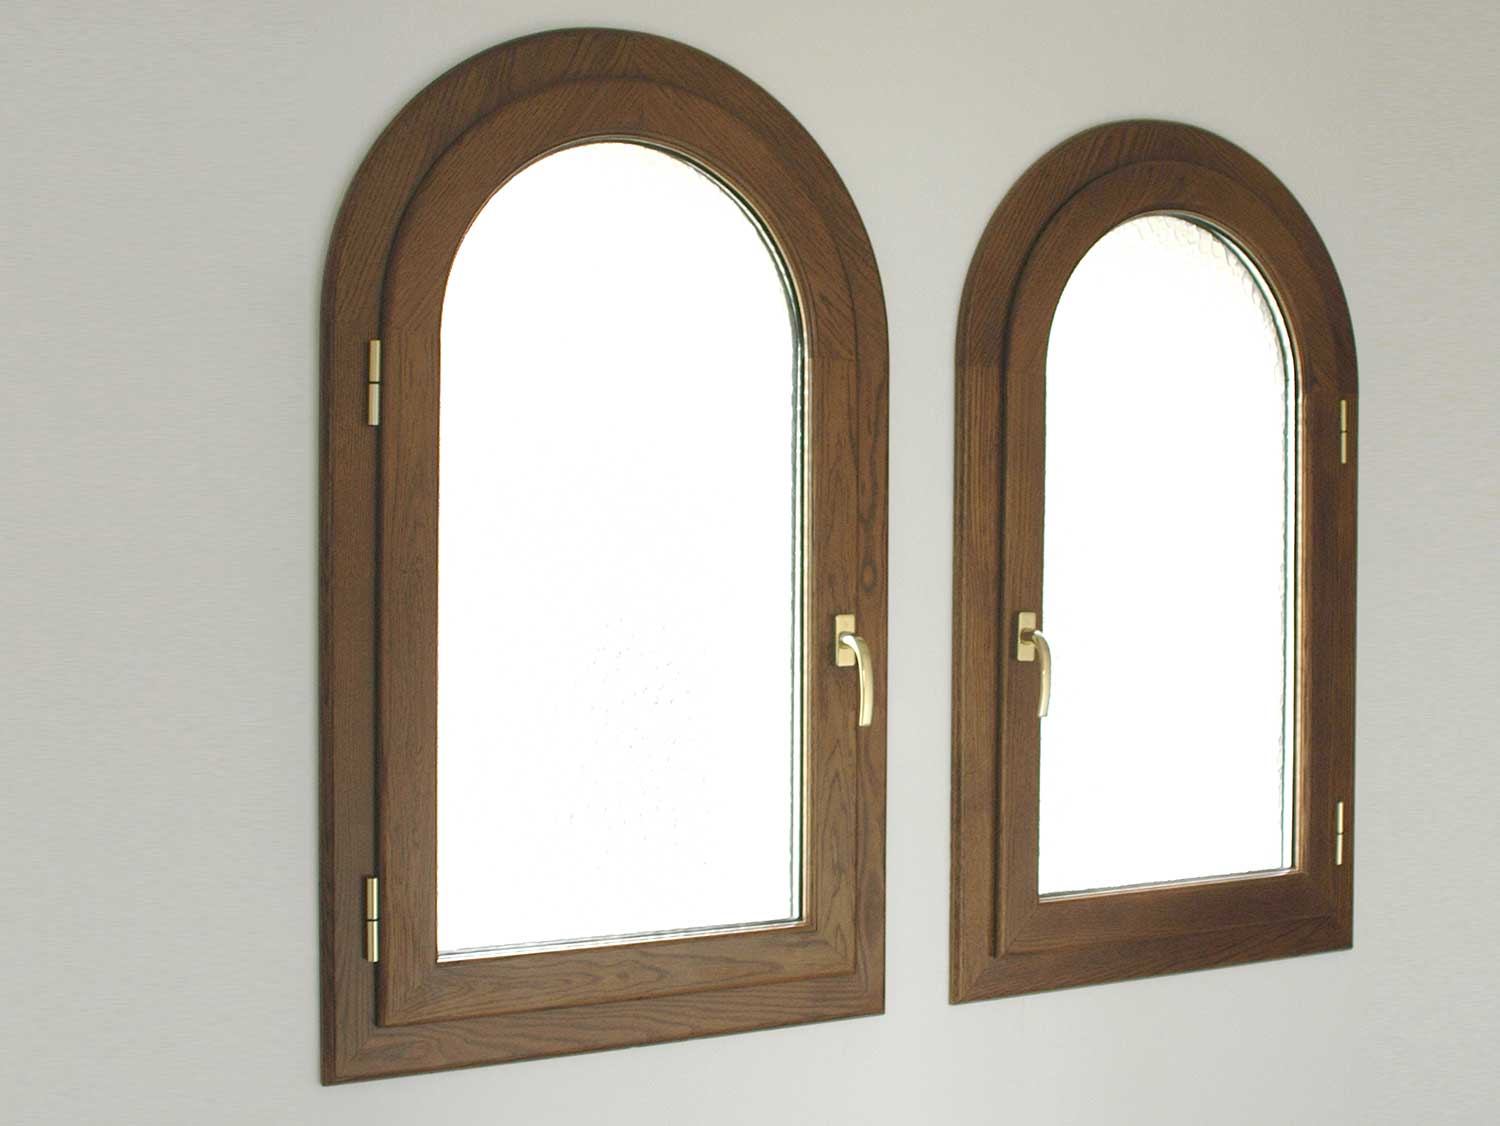 Fenêtres mixtes (aluminium-bois) finition arrondie